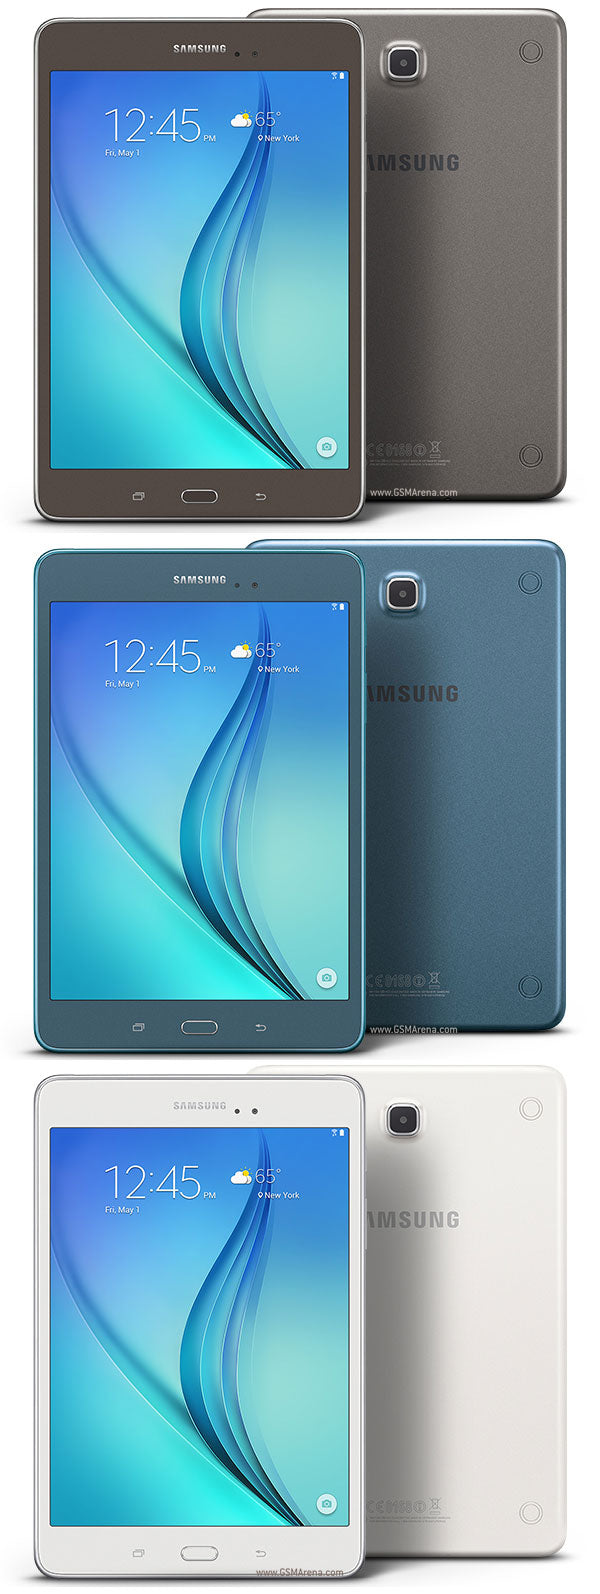 Samsung Galaxy Tab 8.0 (2015) (WiFi + Cellular)